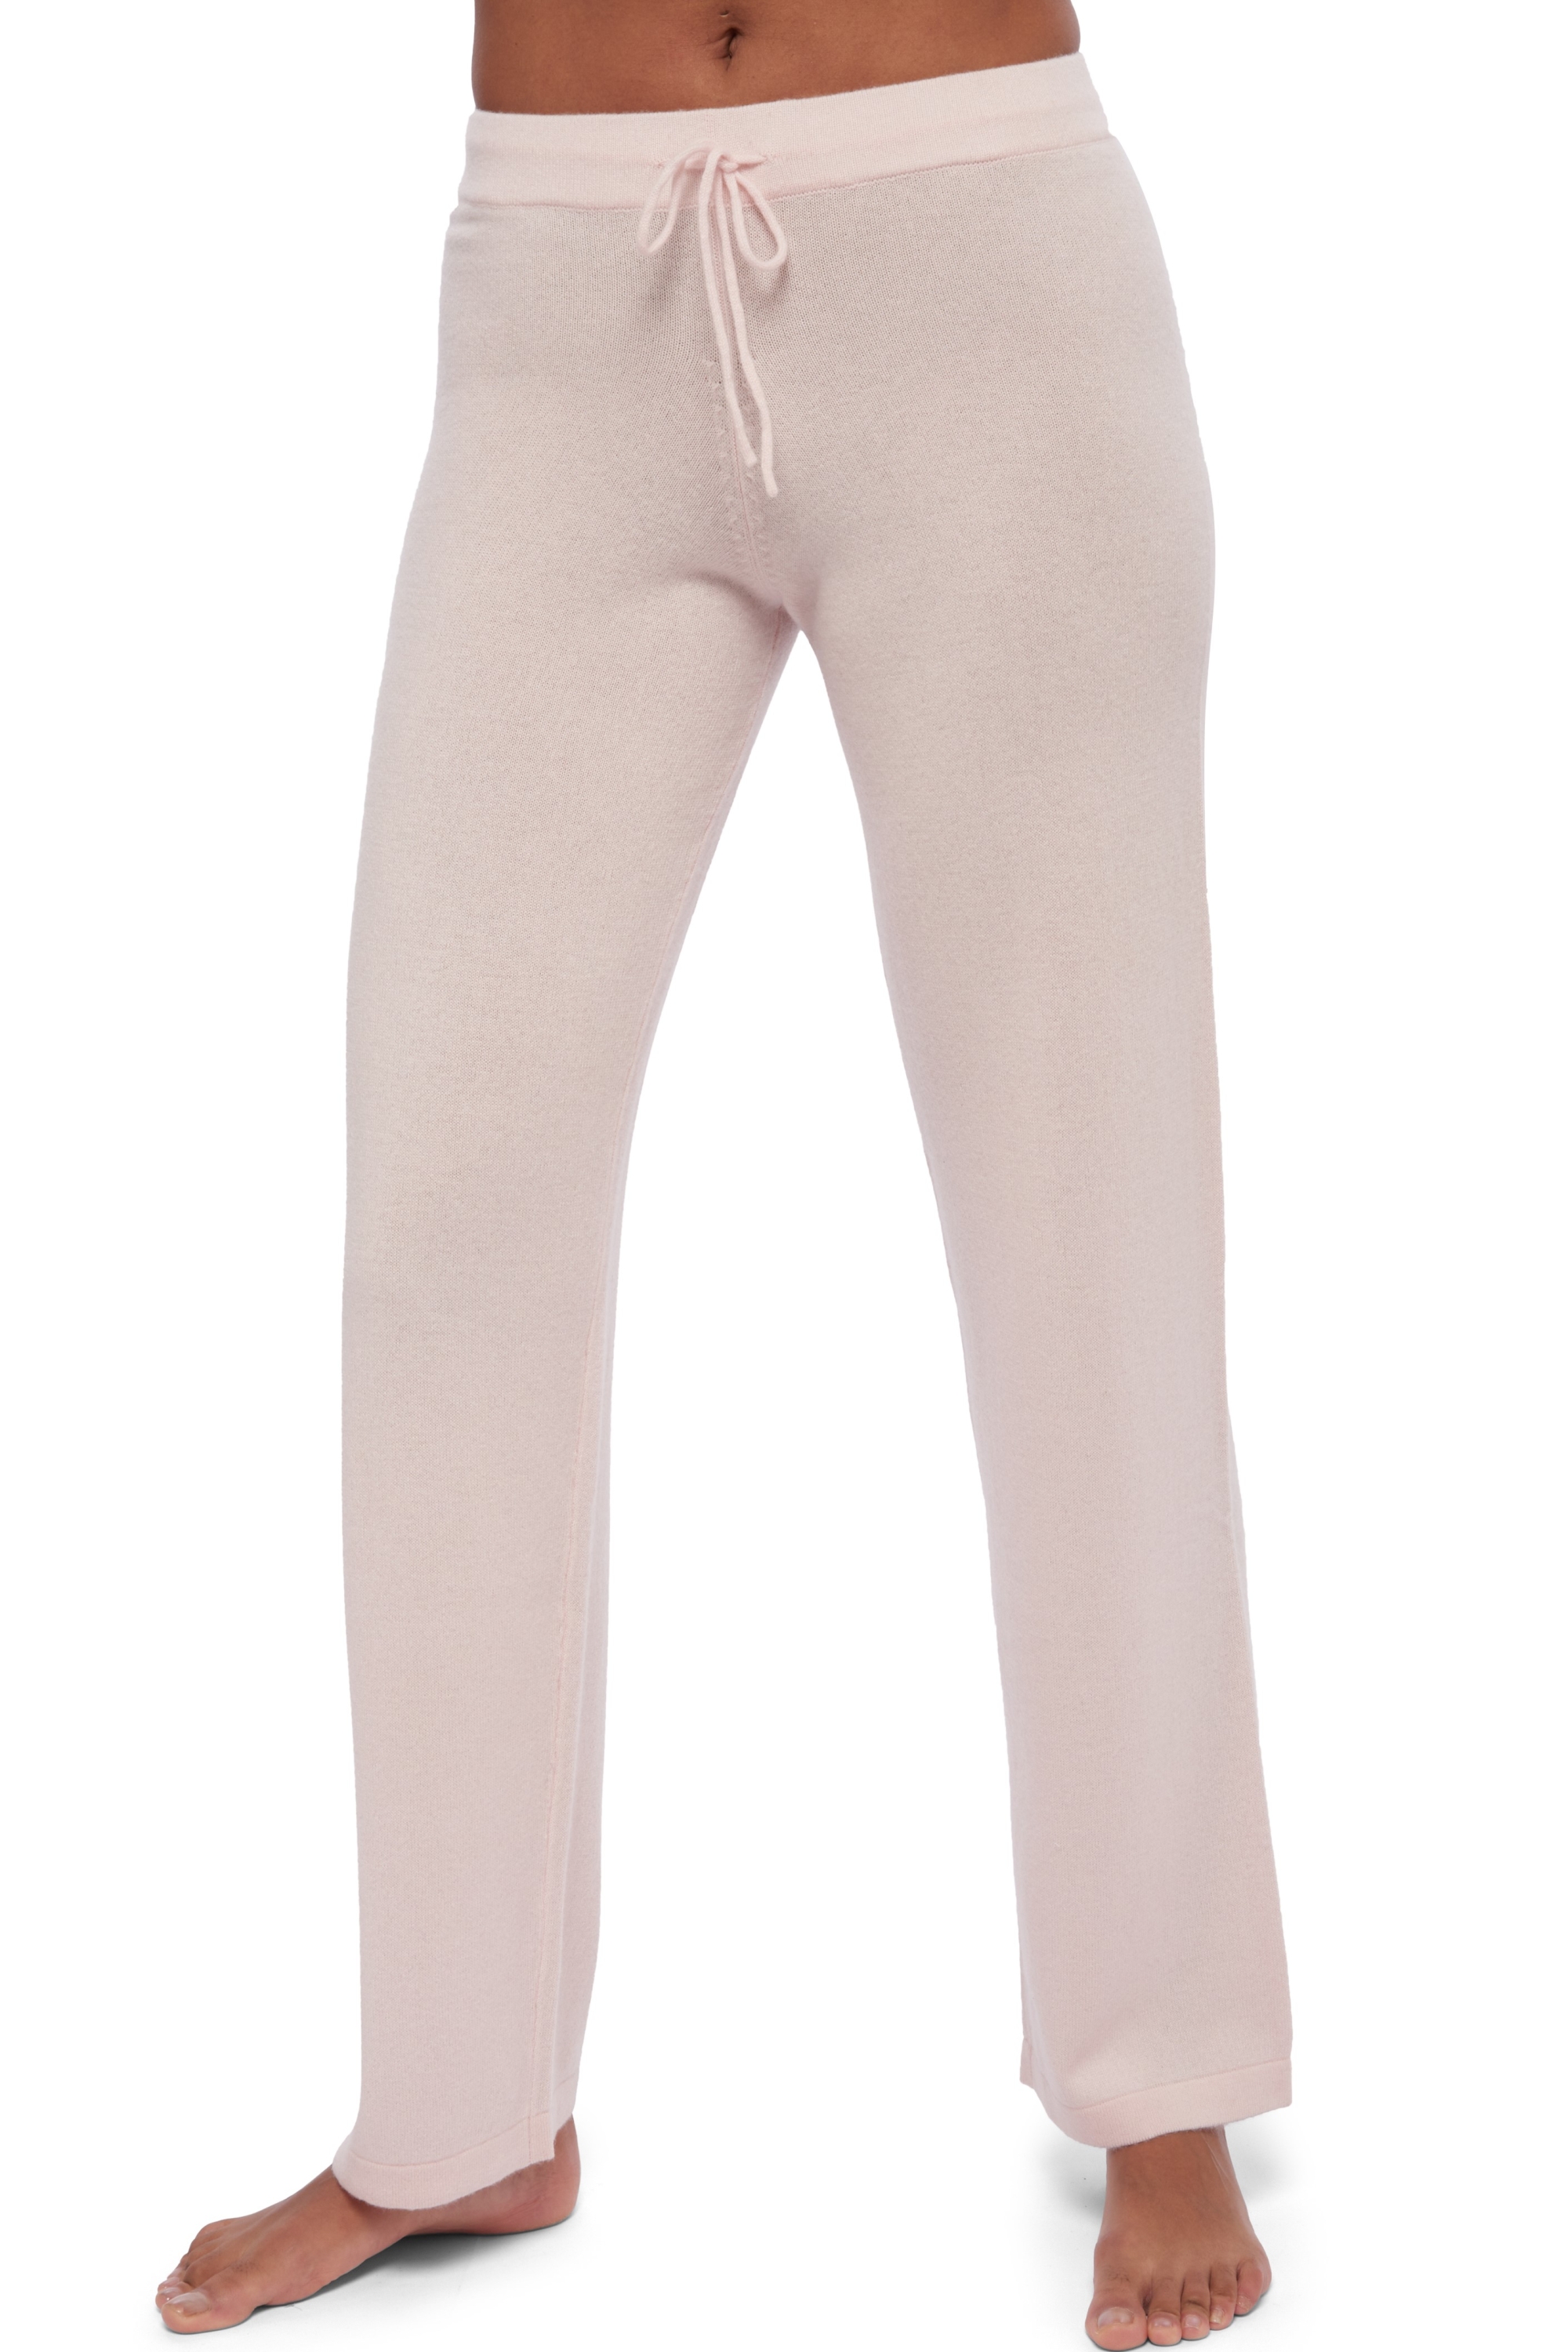 Kasjmier dames kasjmier broeken leggings malice licht roze 2xl